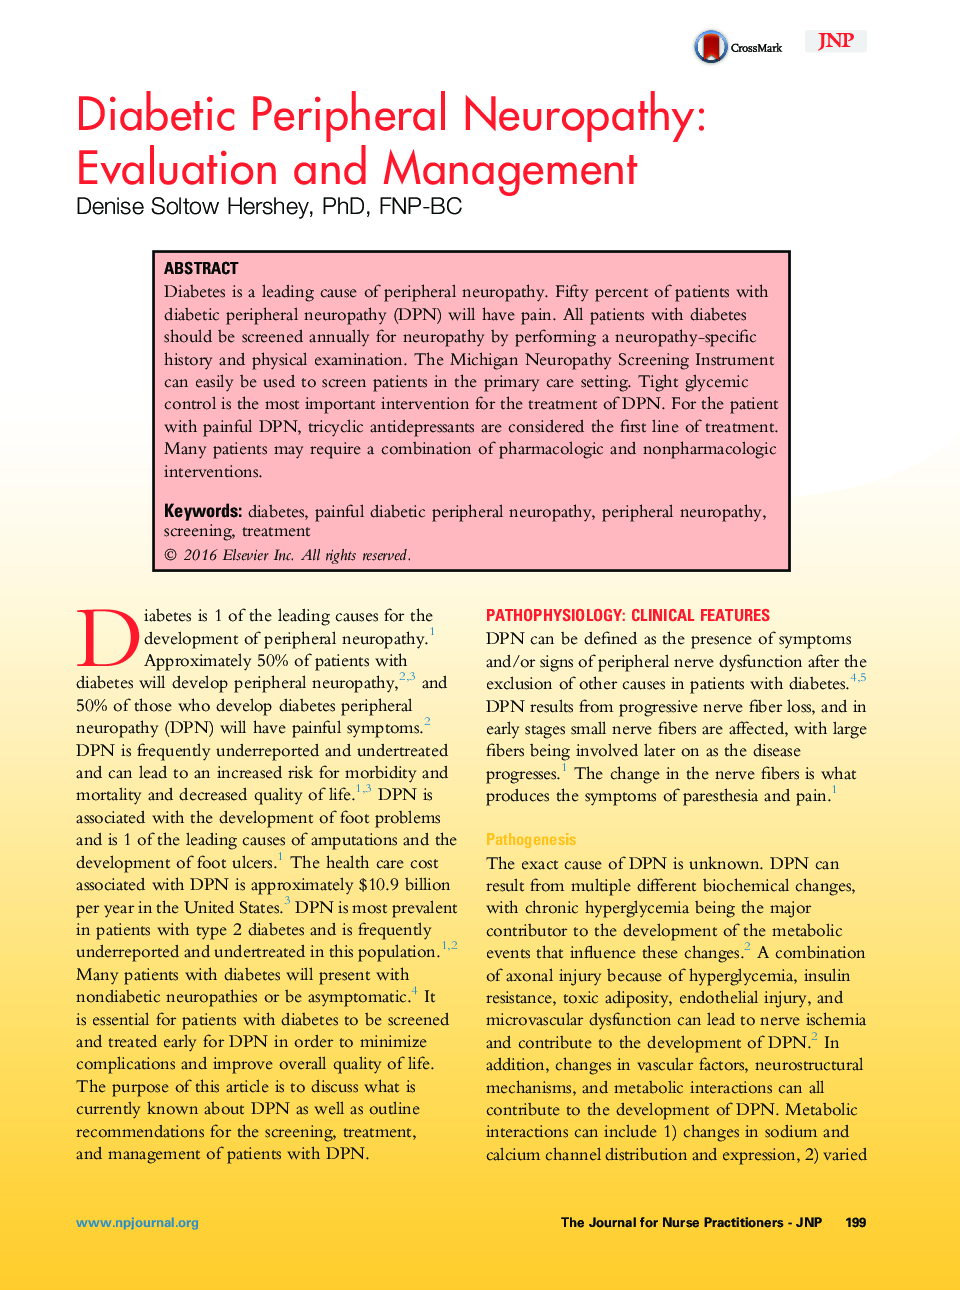 نوروپاتی محیطی دیابتی: ارزیابی و مدیریت 